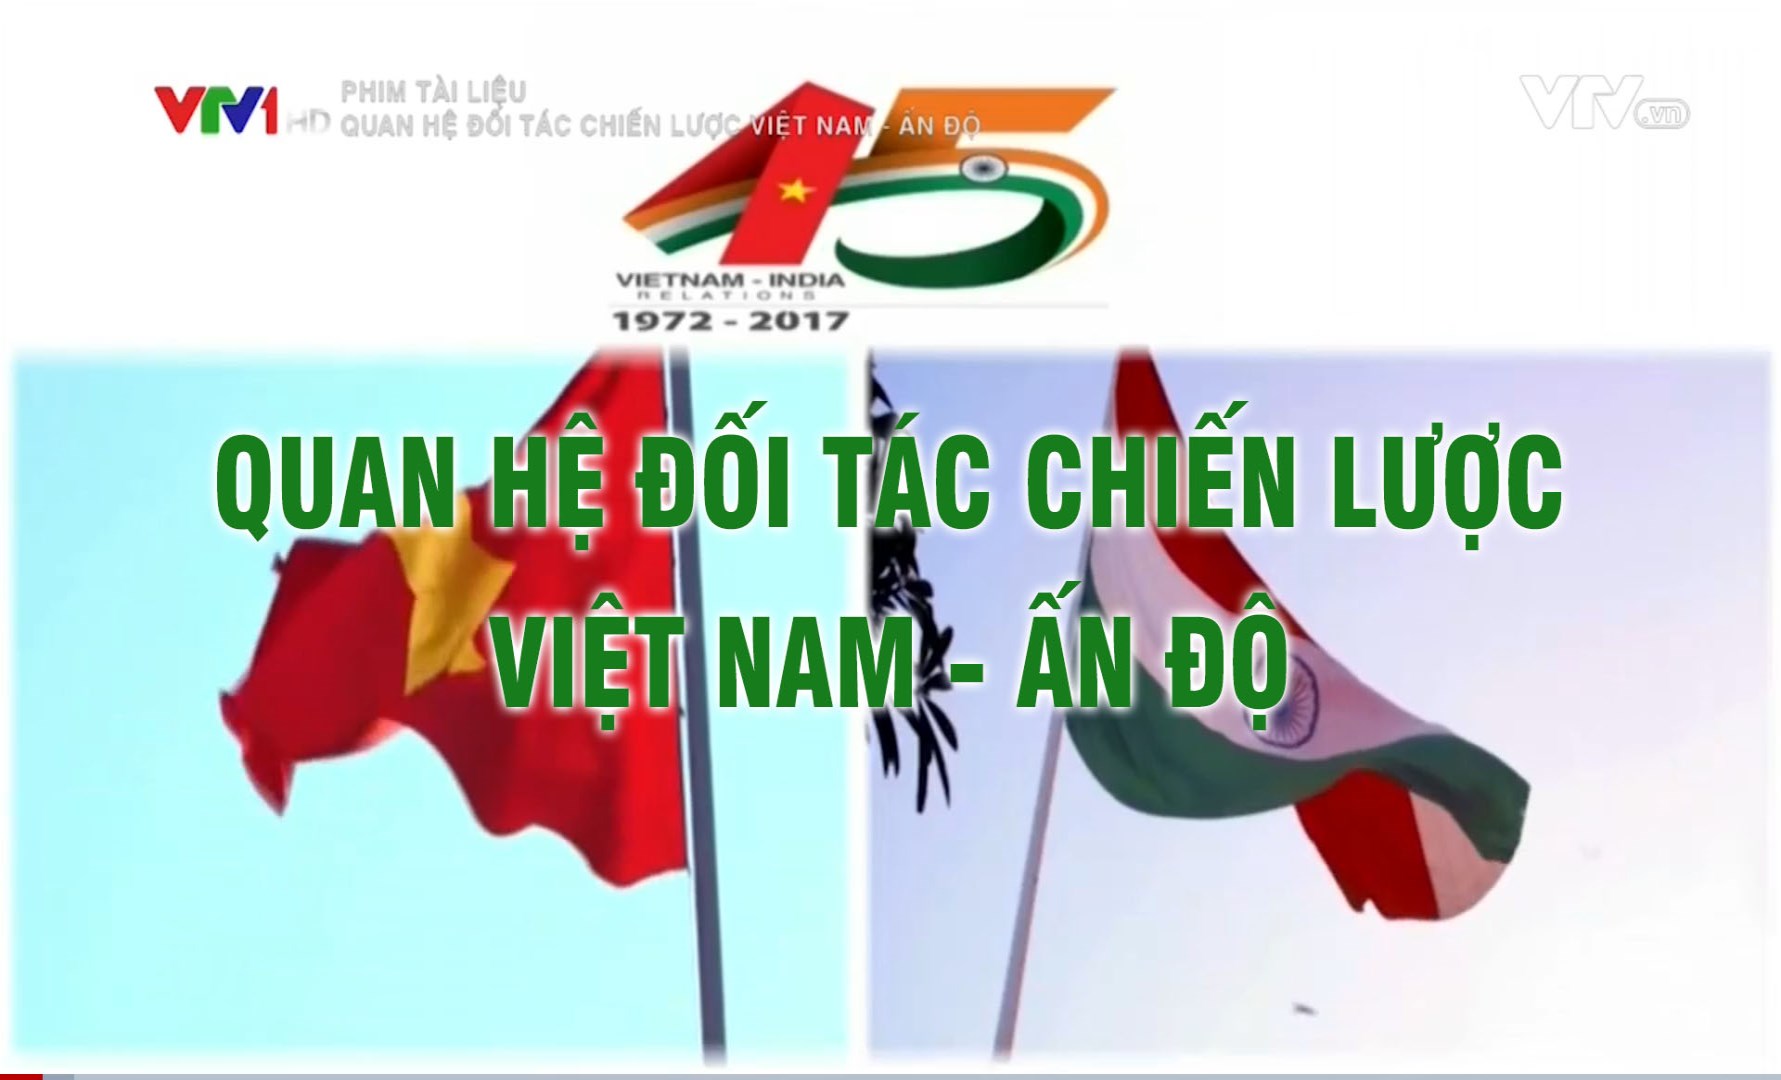 Phim tài liệu: Quan hệ đối tác chiến lược Việt Nam và Ấn Độ